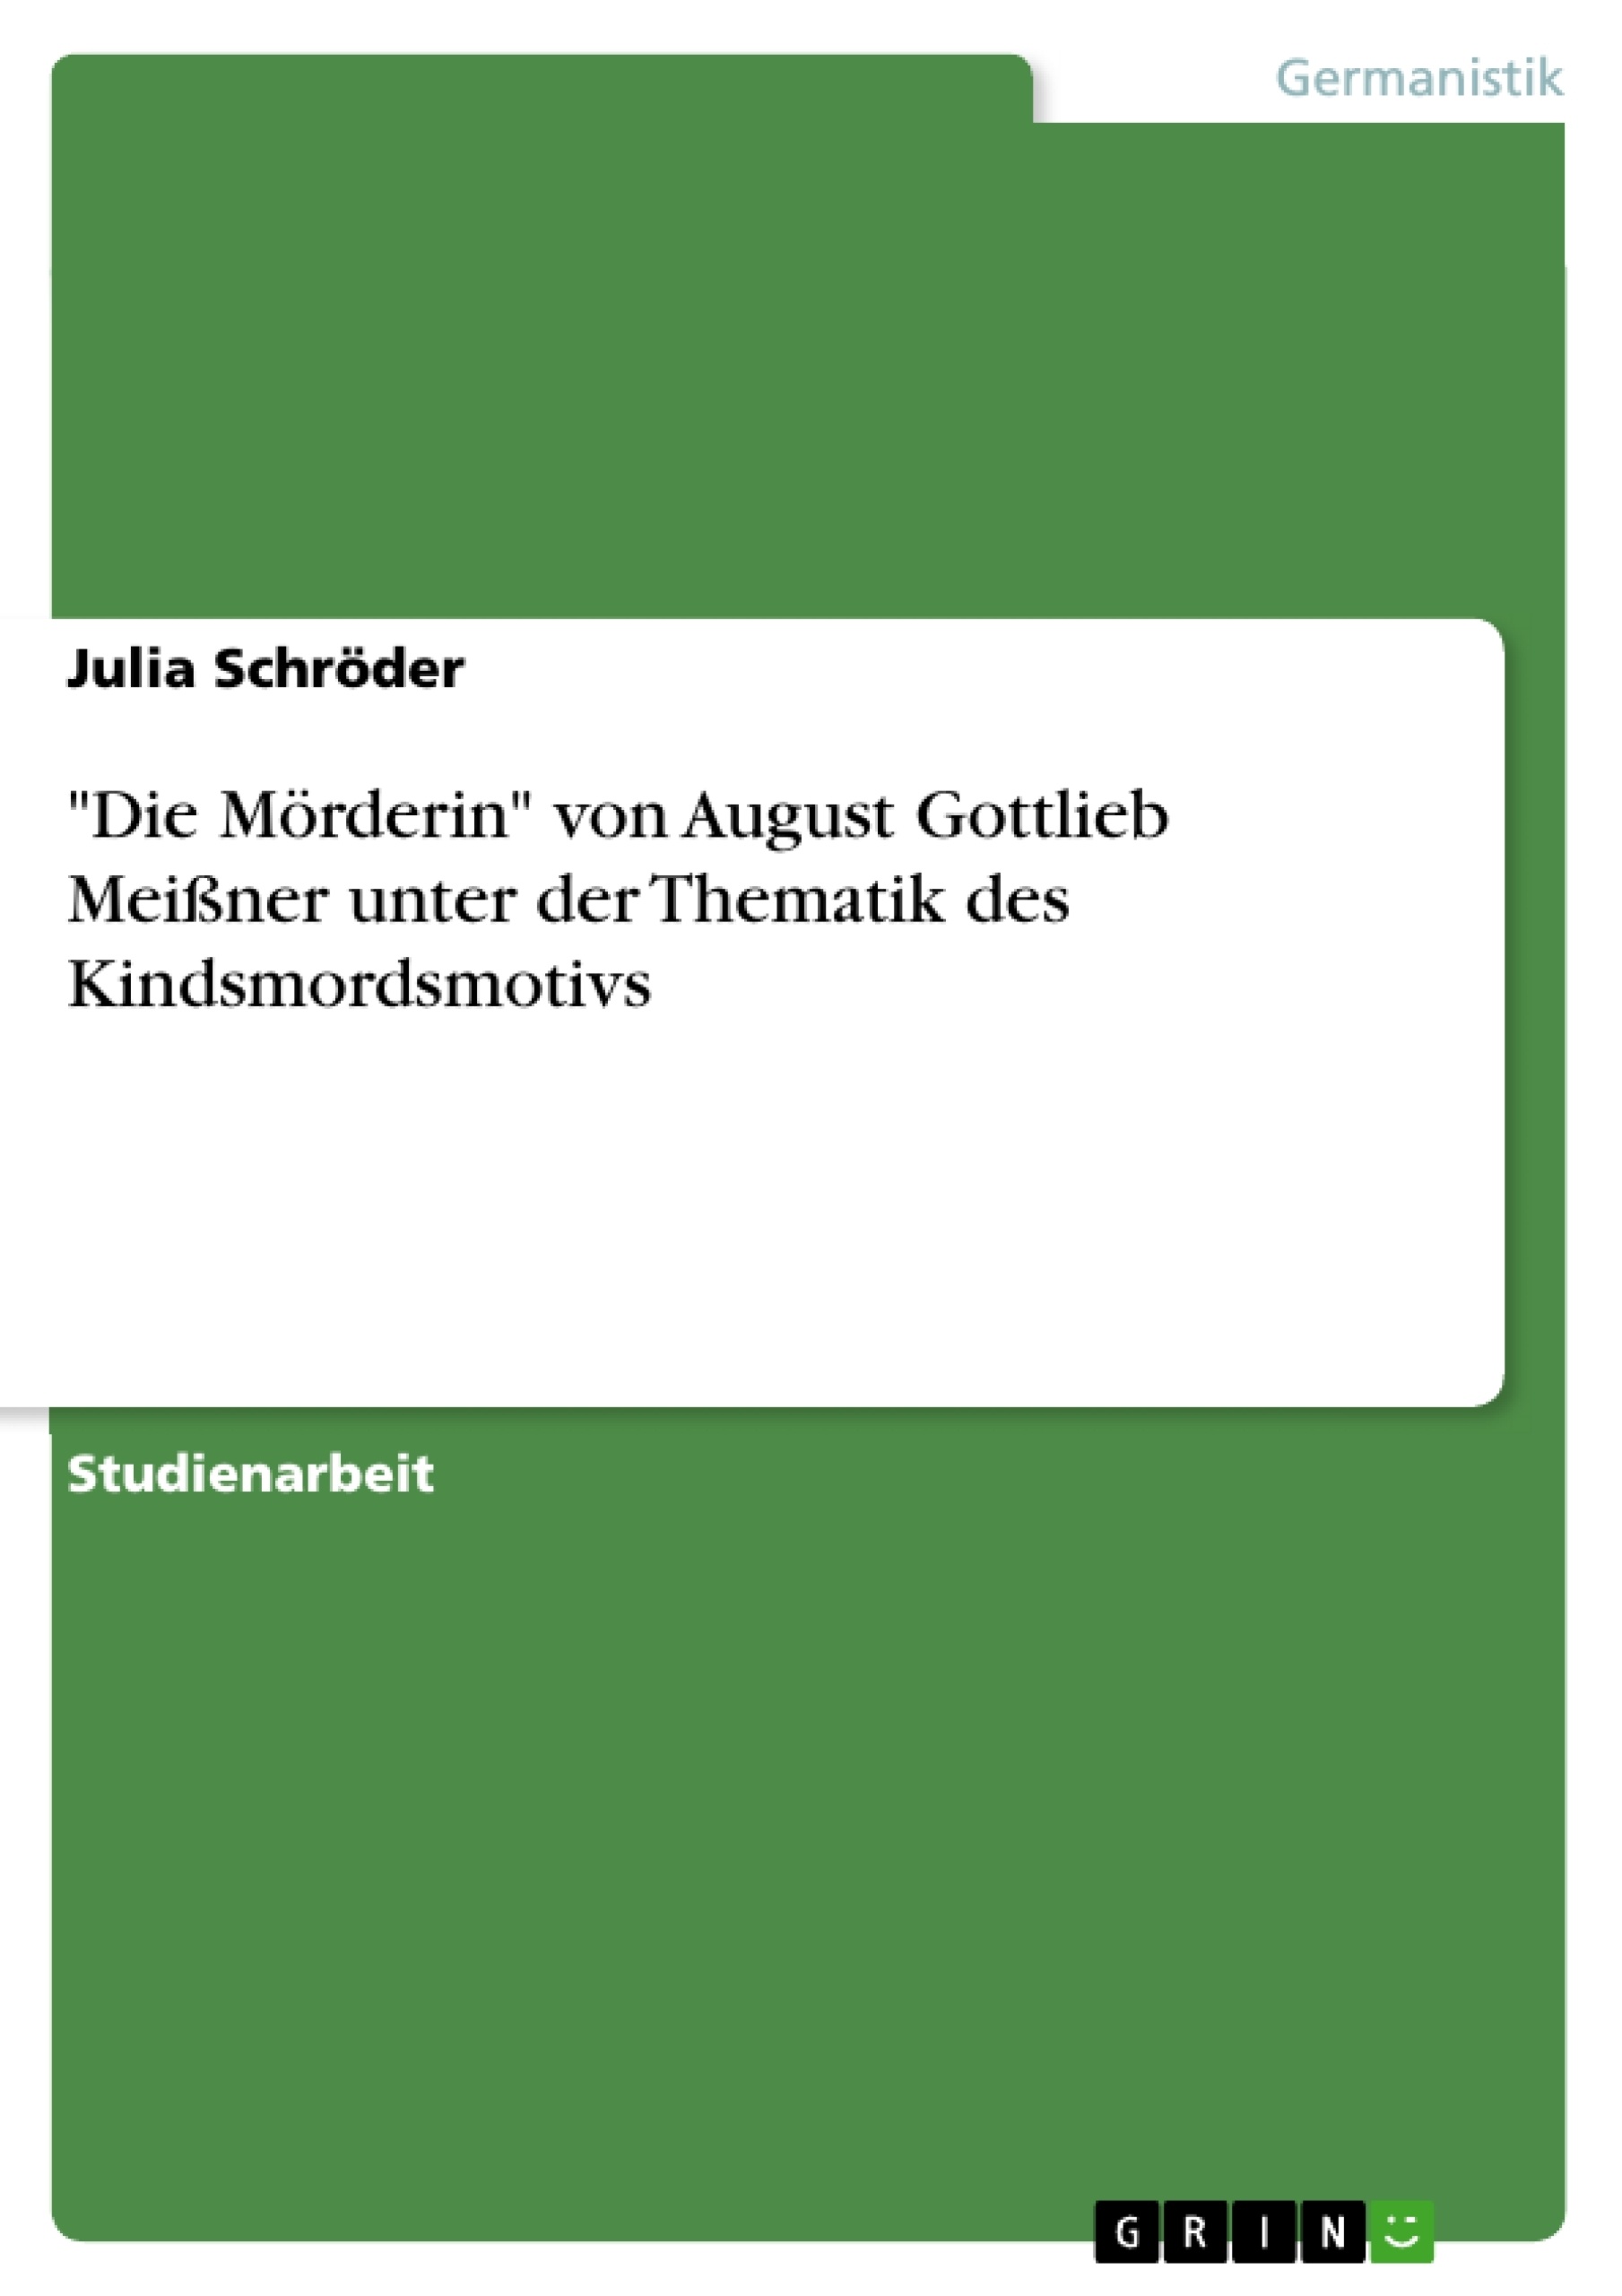 Title: "Die Mörderin" von August Gottlieb Meißner unter der Thematik des Kindsmordsmotivs